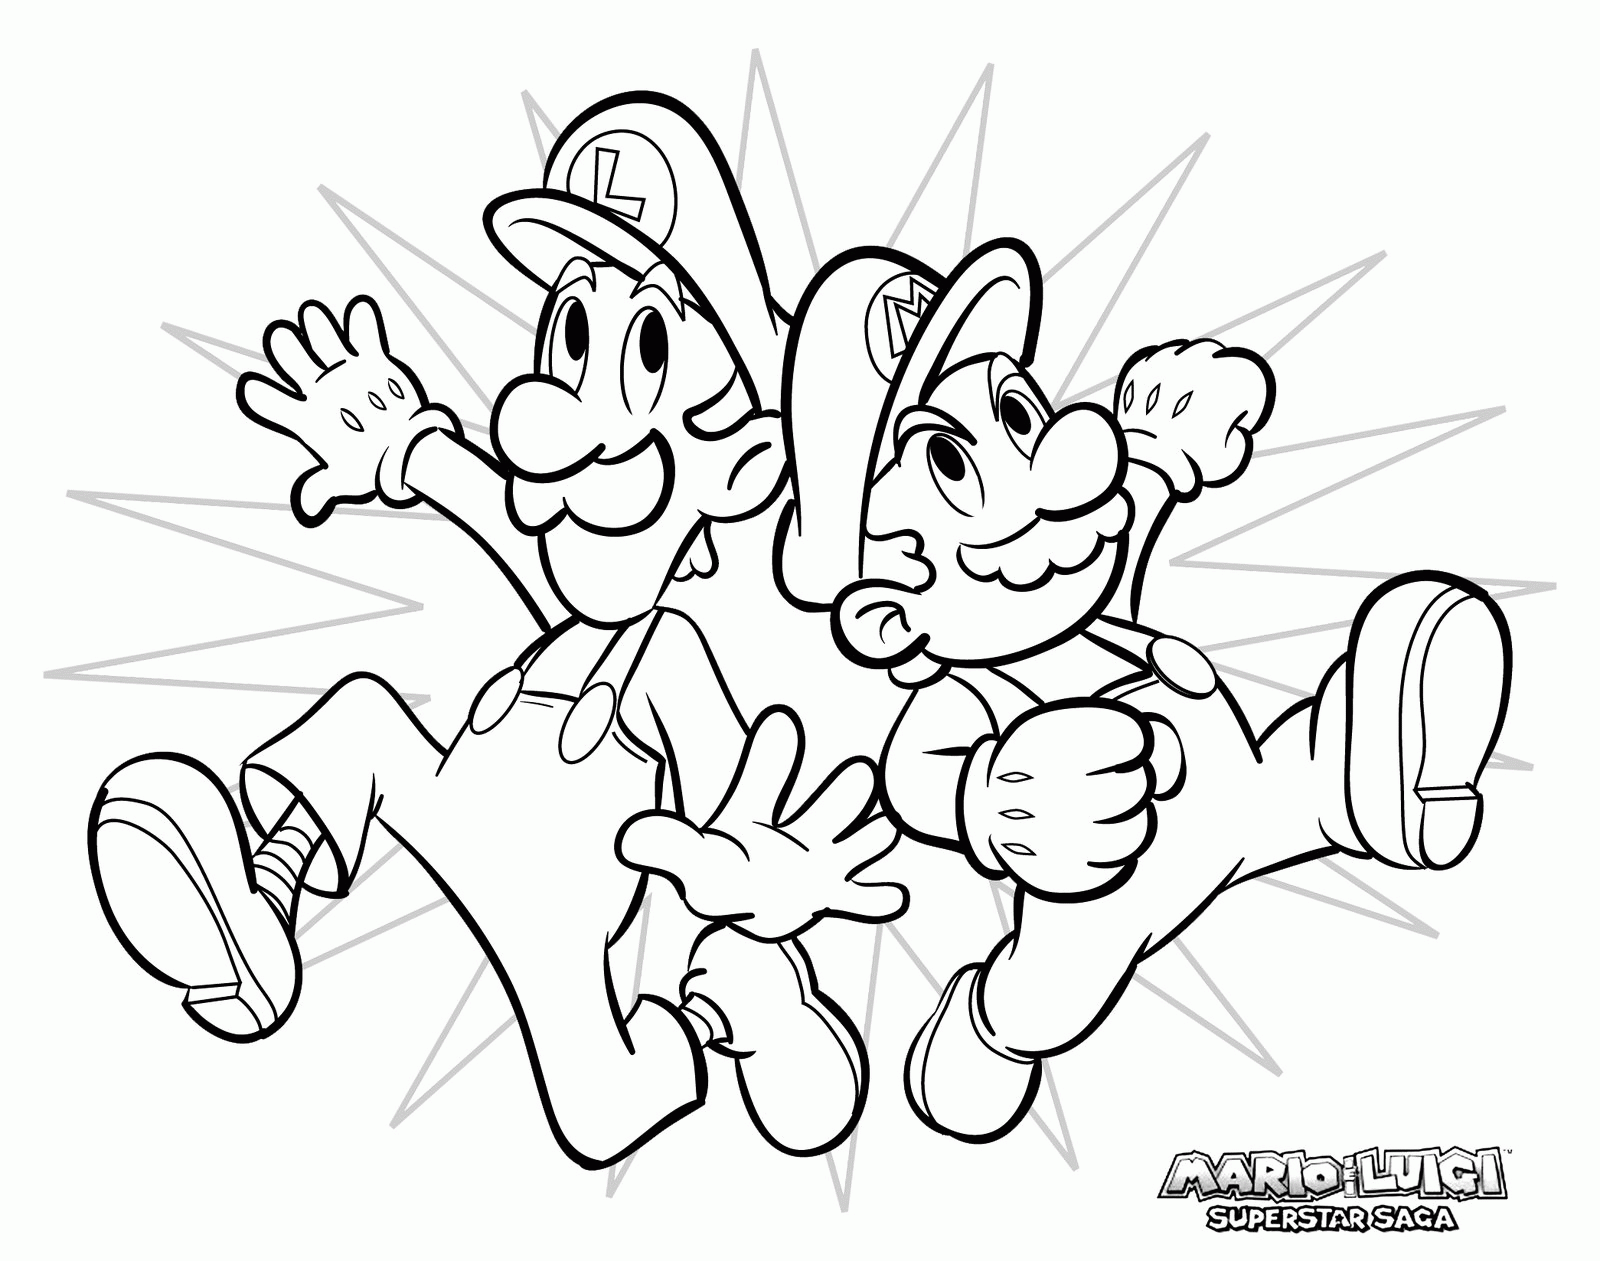 Mario Bros coloring page to download : Luigi and Mario